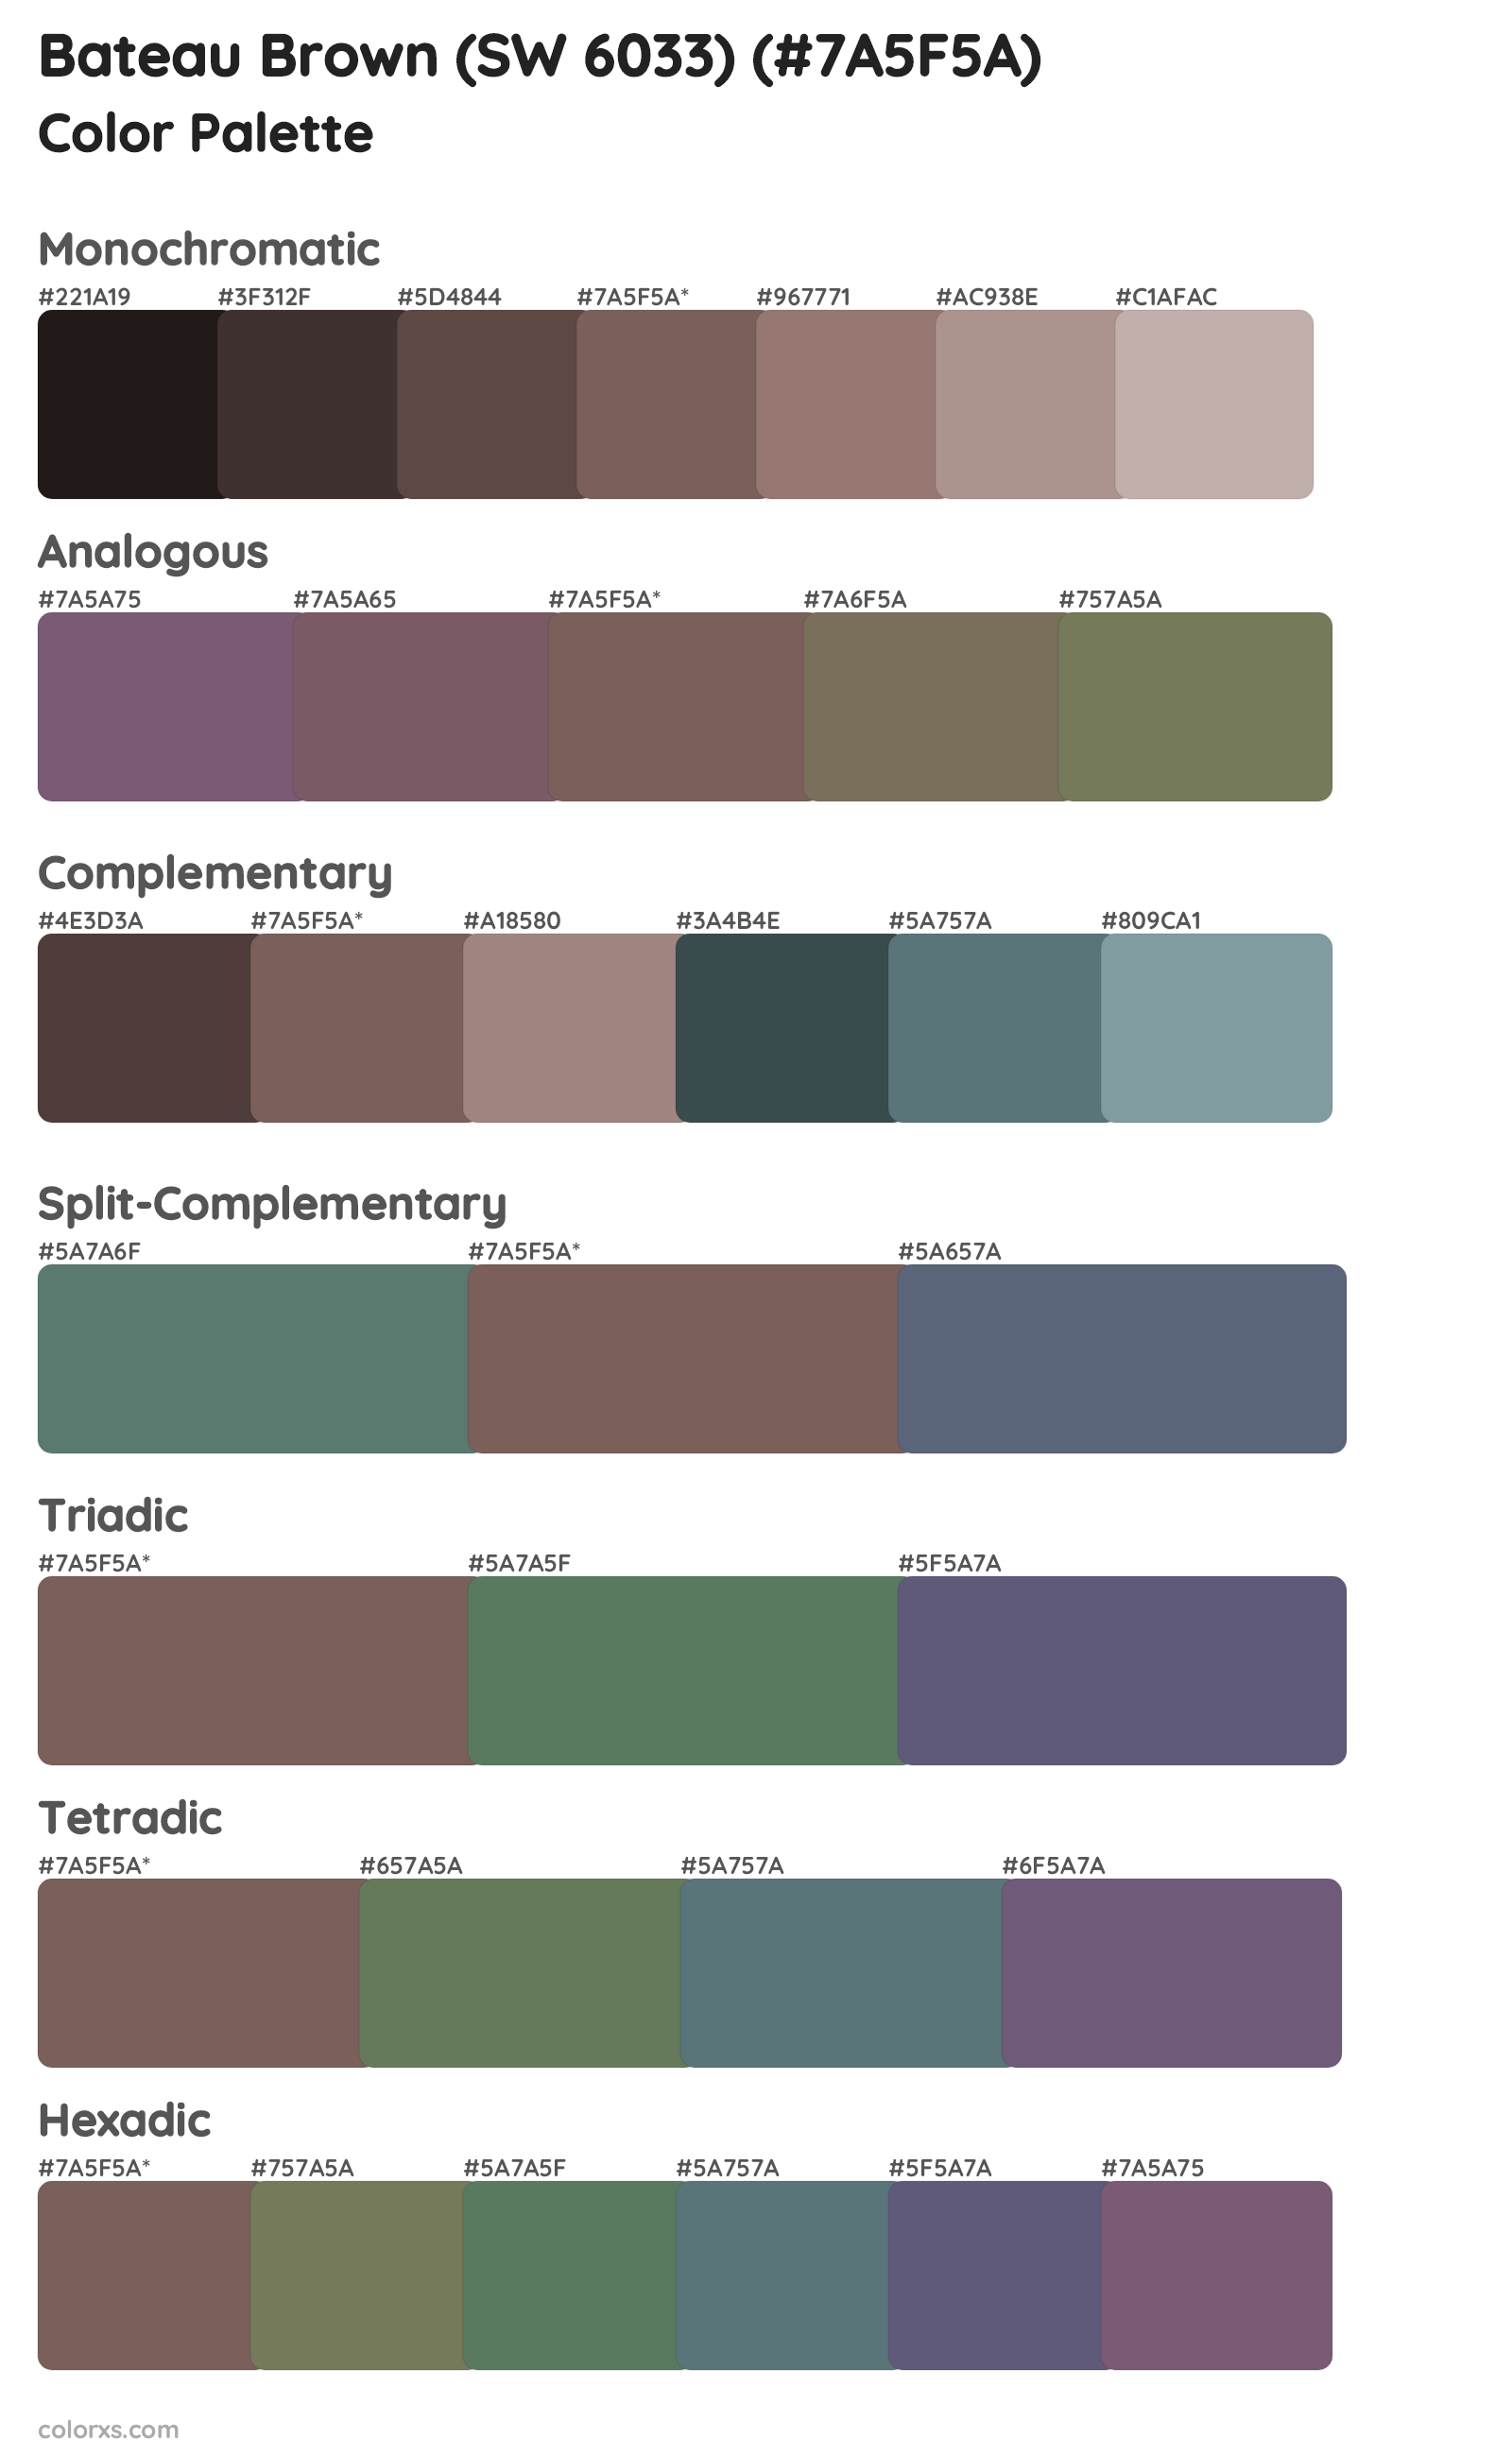 Bateau Brown (SW 6033) Color Scheme Palettes